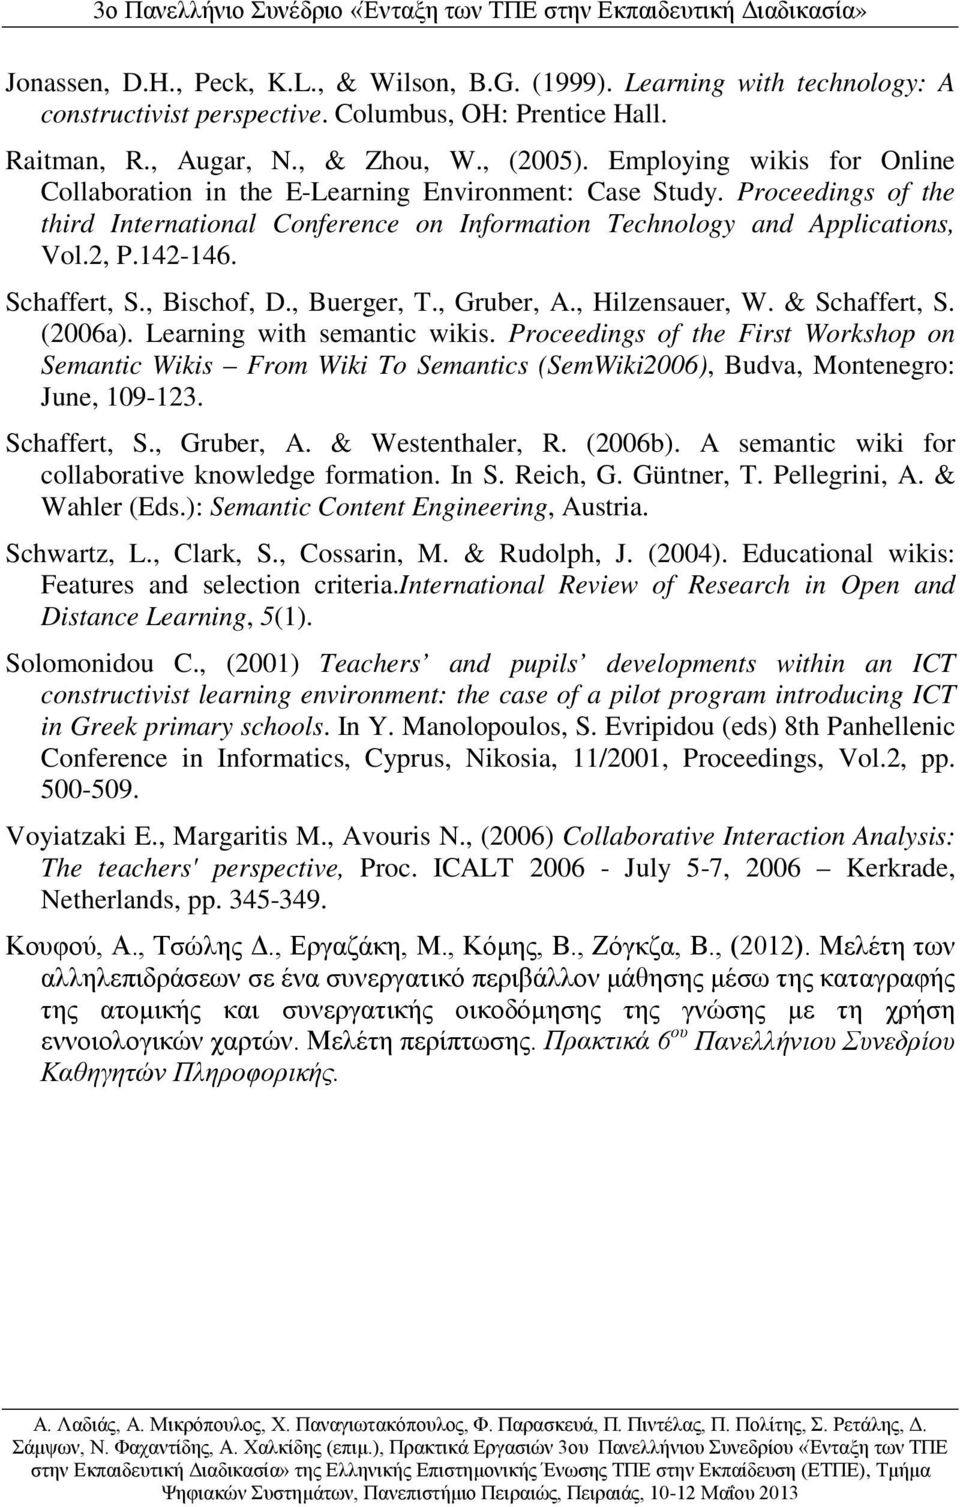 Schaffert, S., Bischof, D., Buerger, T., Gruber, A., Hilzensauer, W. & Schaffert, S. (2006a). Learning with semantic wikis.